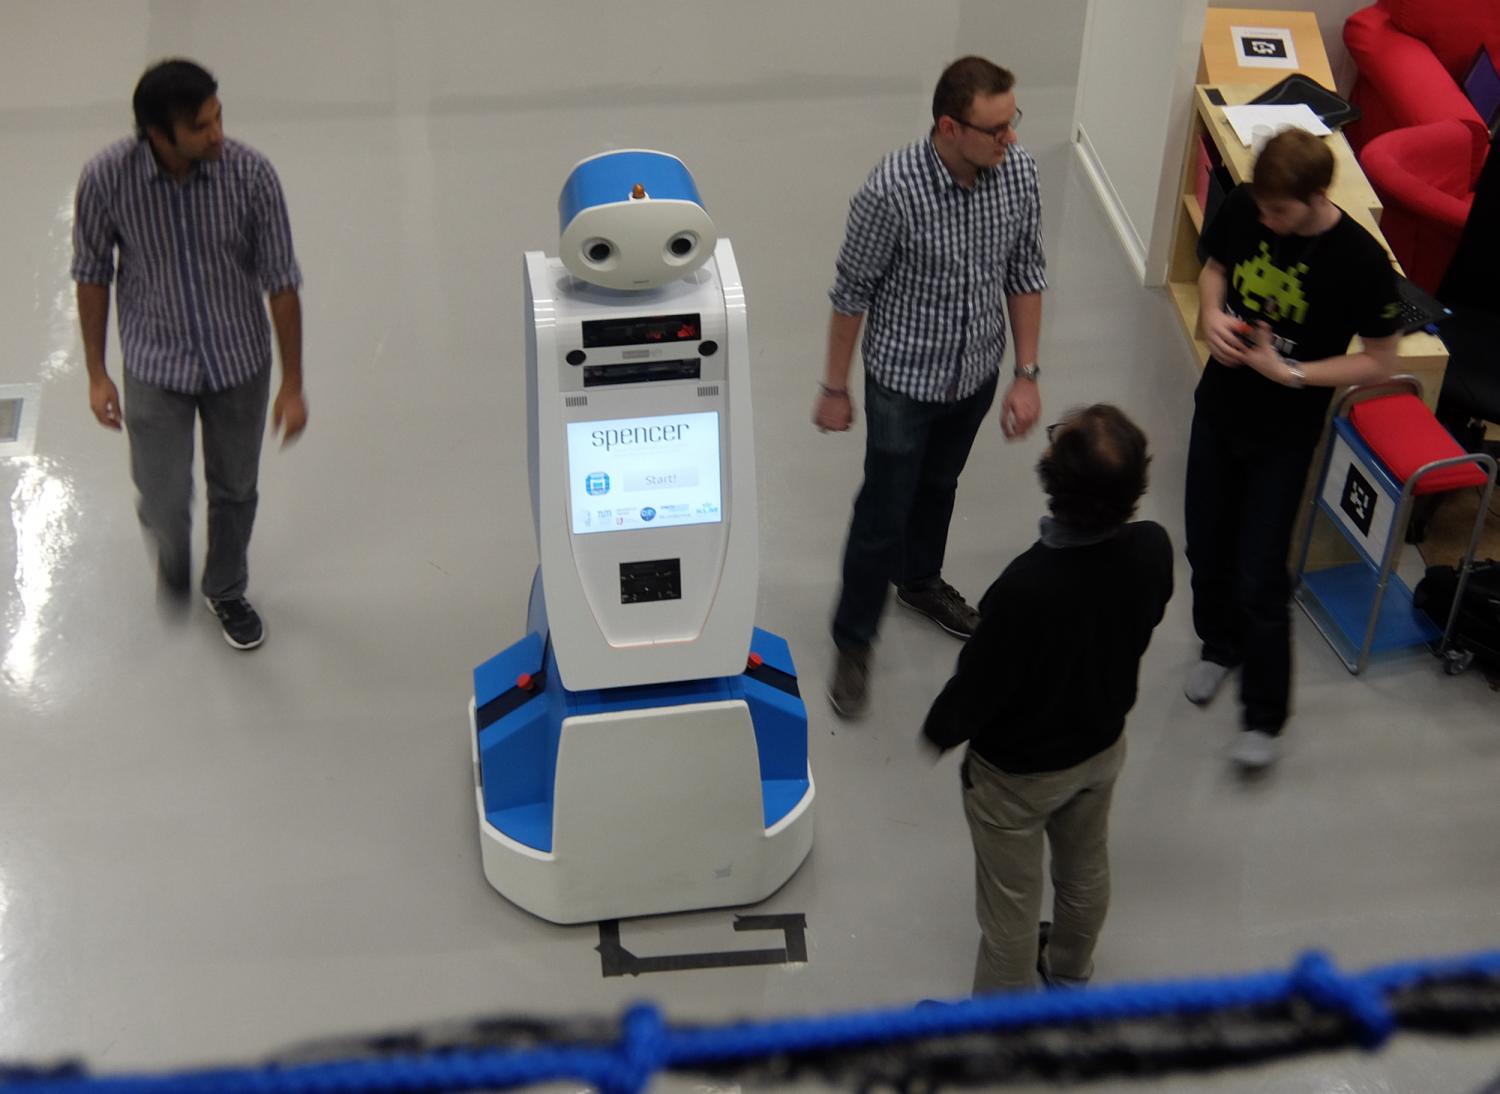 机器人 Spencer 将会在机场做「实习管家」